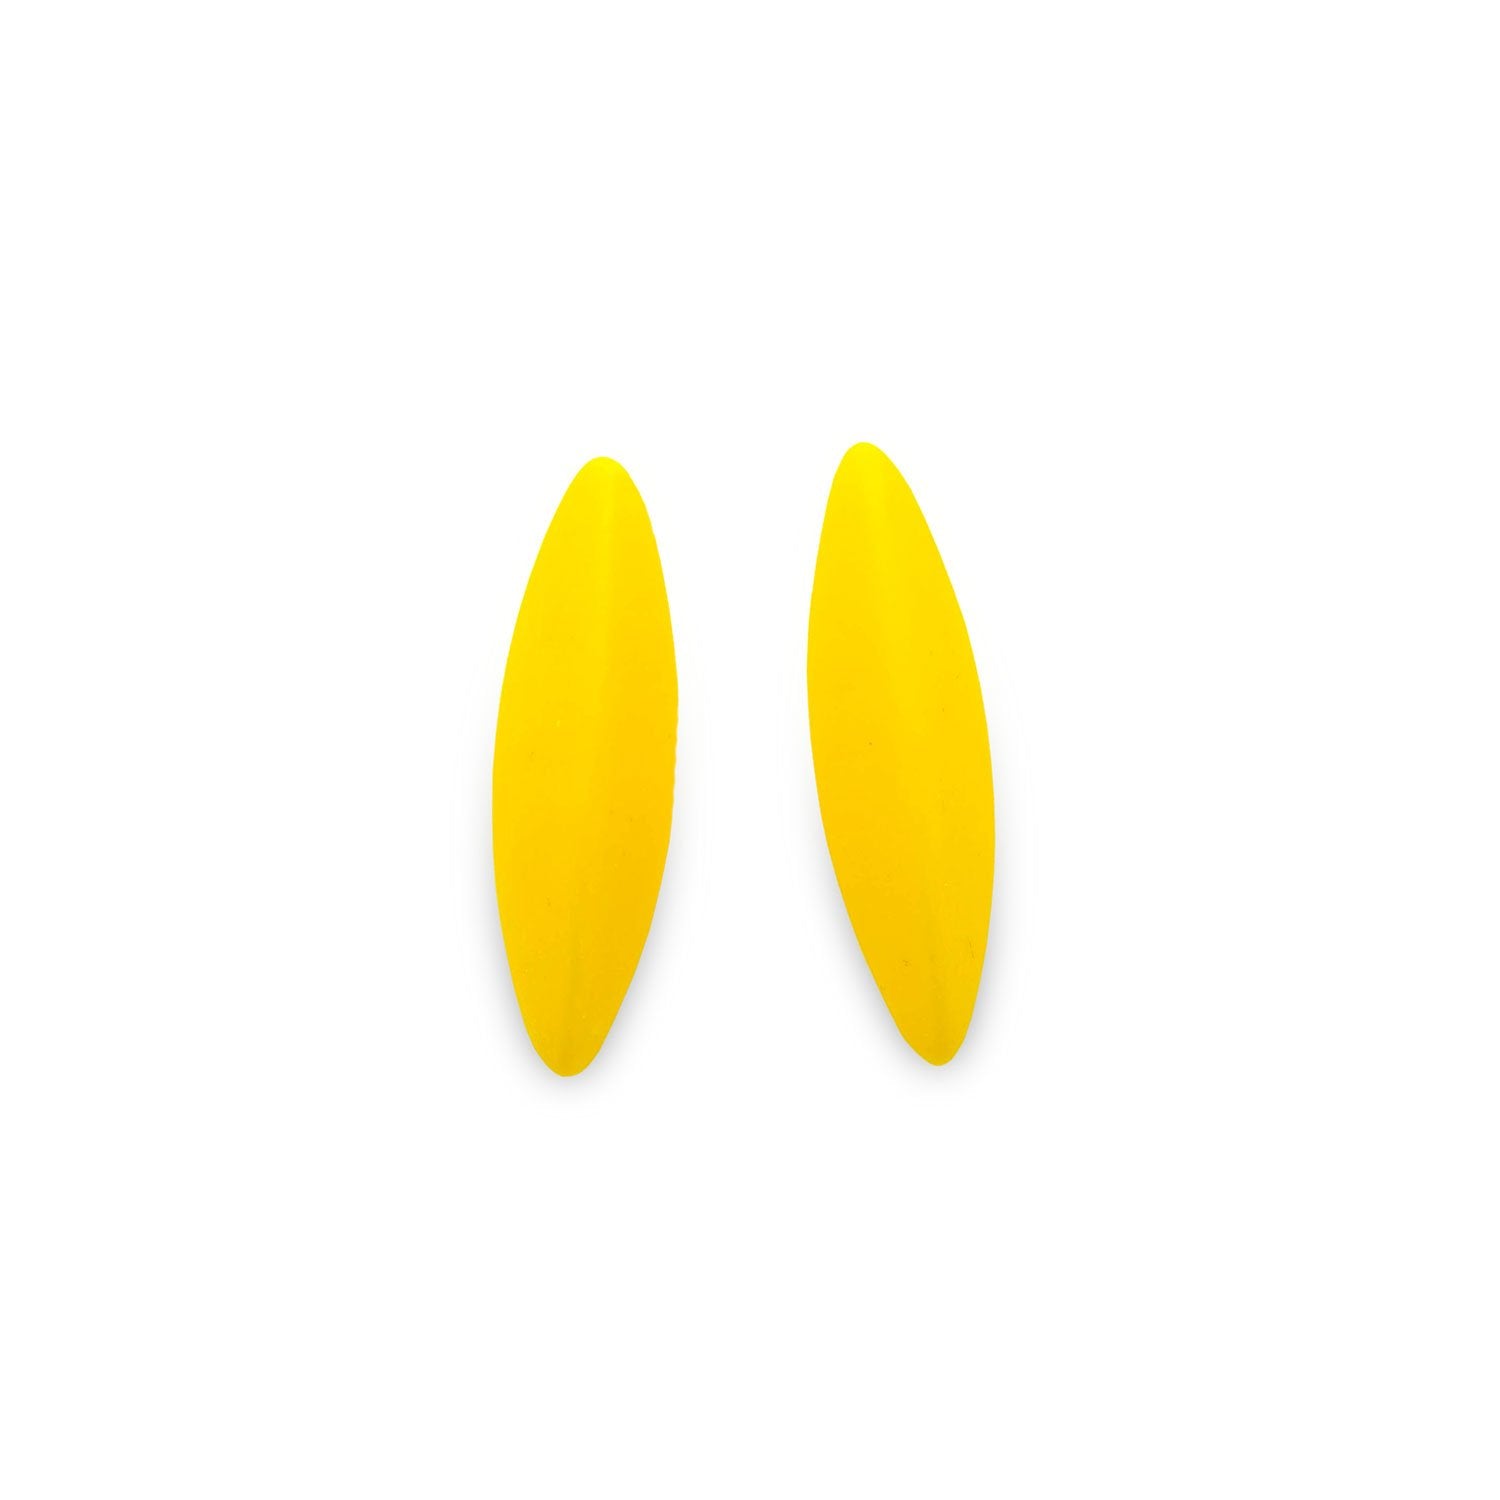 LEAVES earrings, yellow